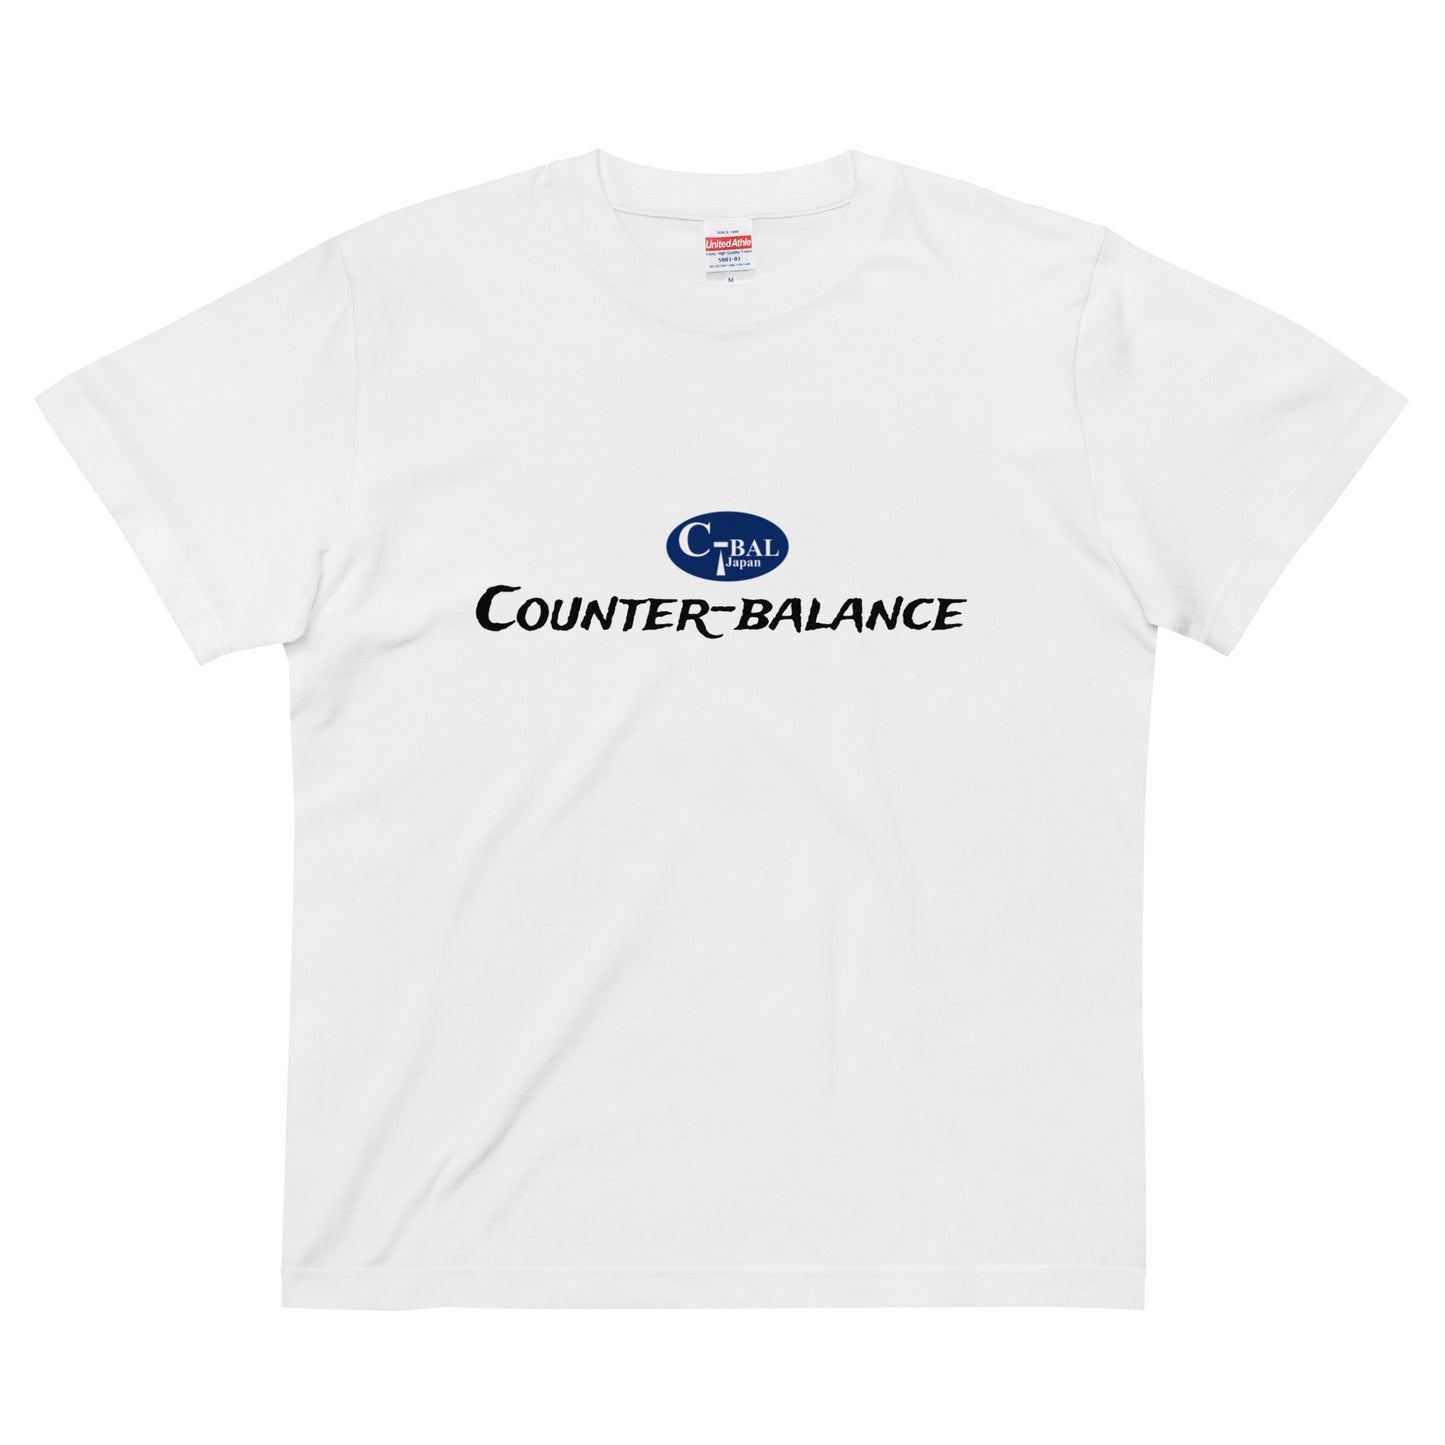 A001 - Katun Berkualitas Tinggi T-shirt (C-BAL : Putih / Navy)